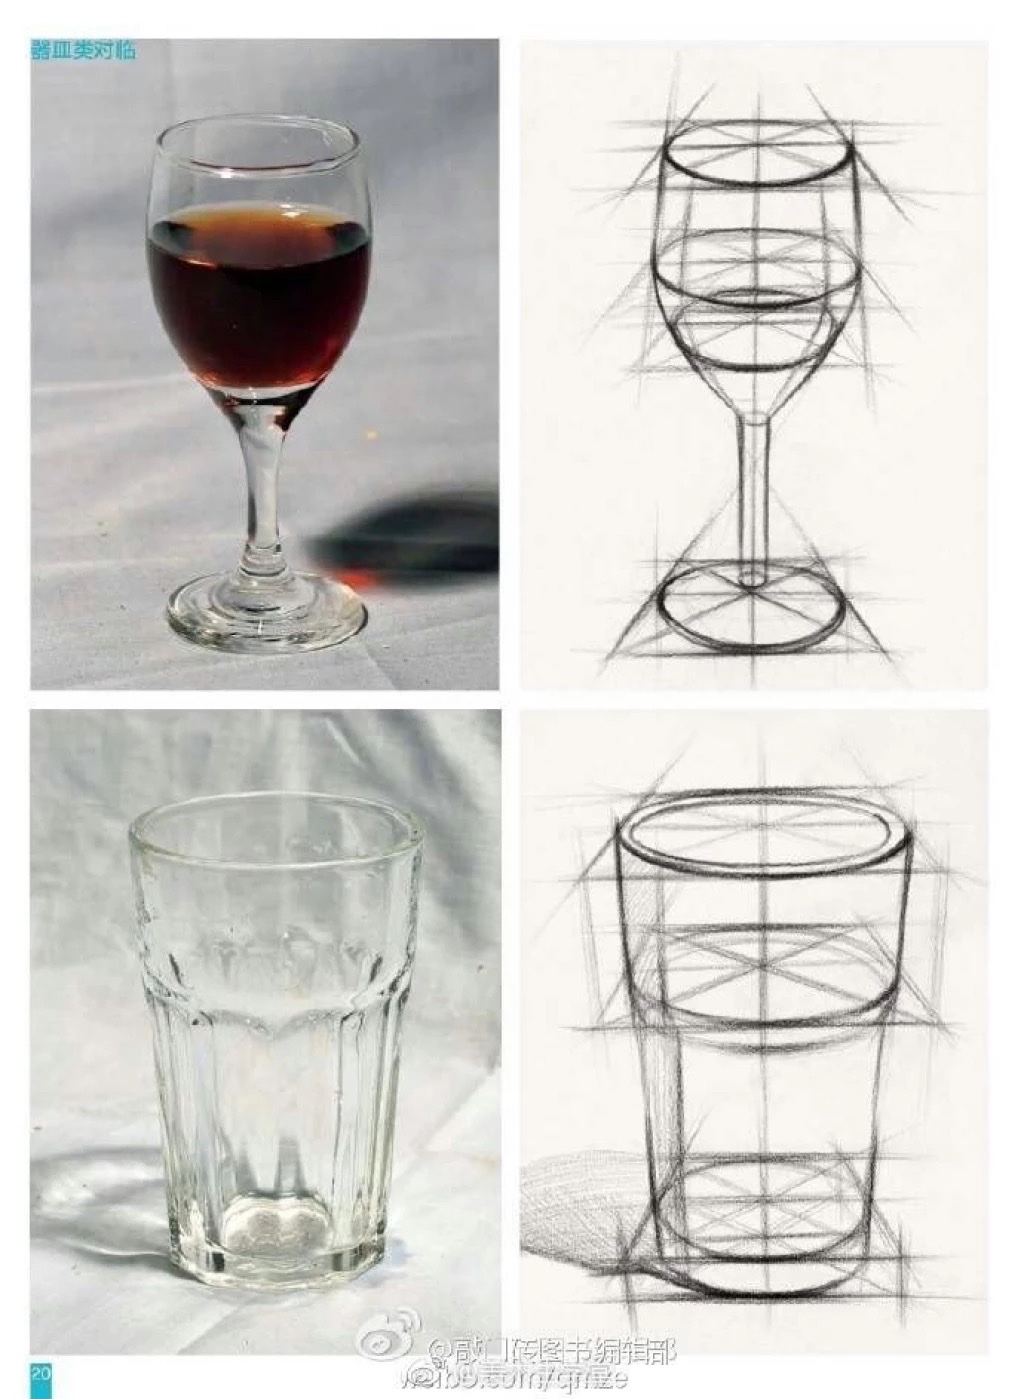 綦煊:二个玻璃杯结构素描,注意透视关系